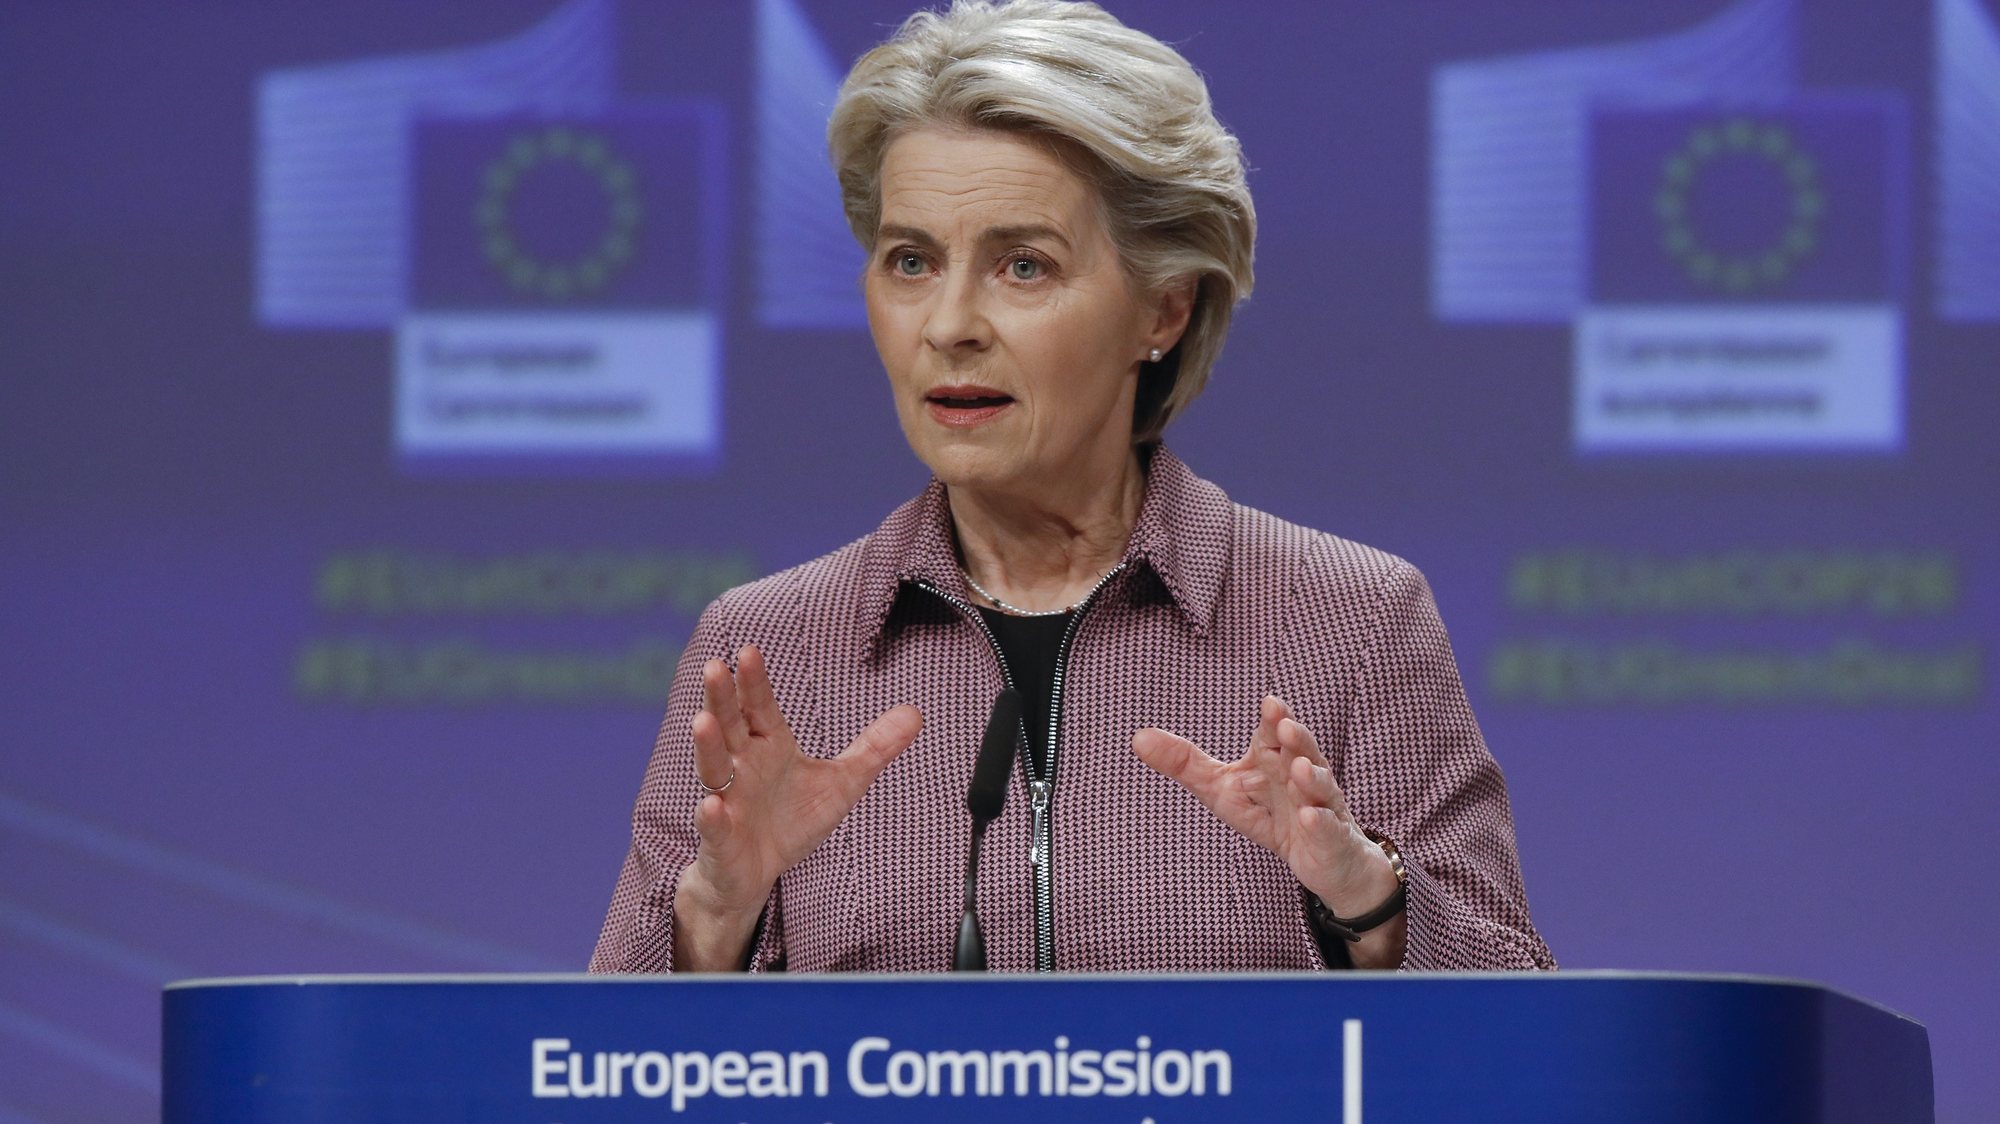 European Commission President von der Leyen